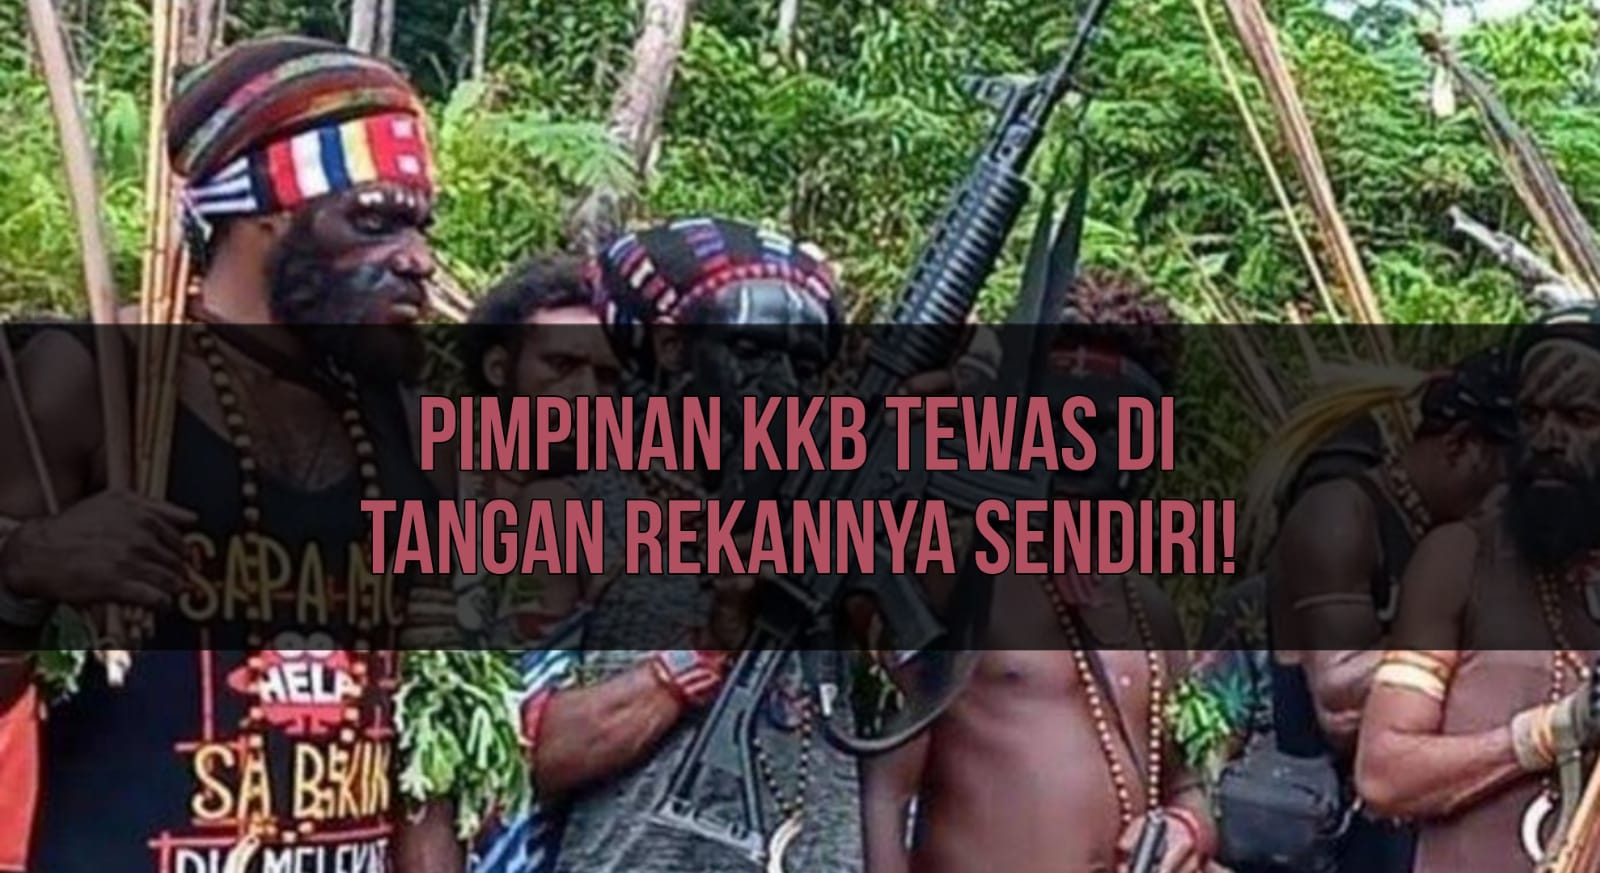 Pimpinan KKB Papua Tewas di Tangan Rekannya Sendiri, Ternyata Ini Penyebabnya!